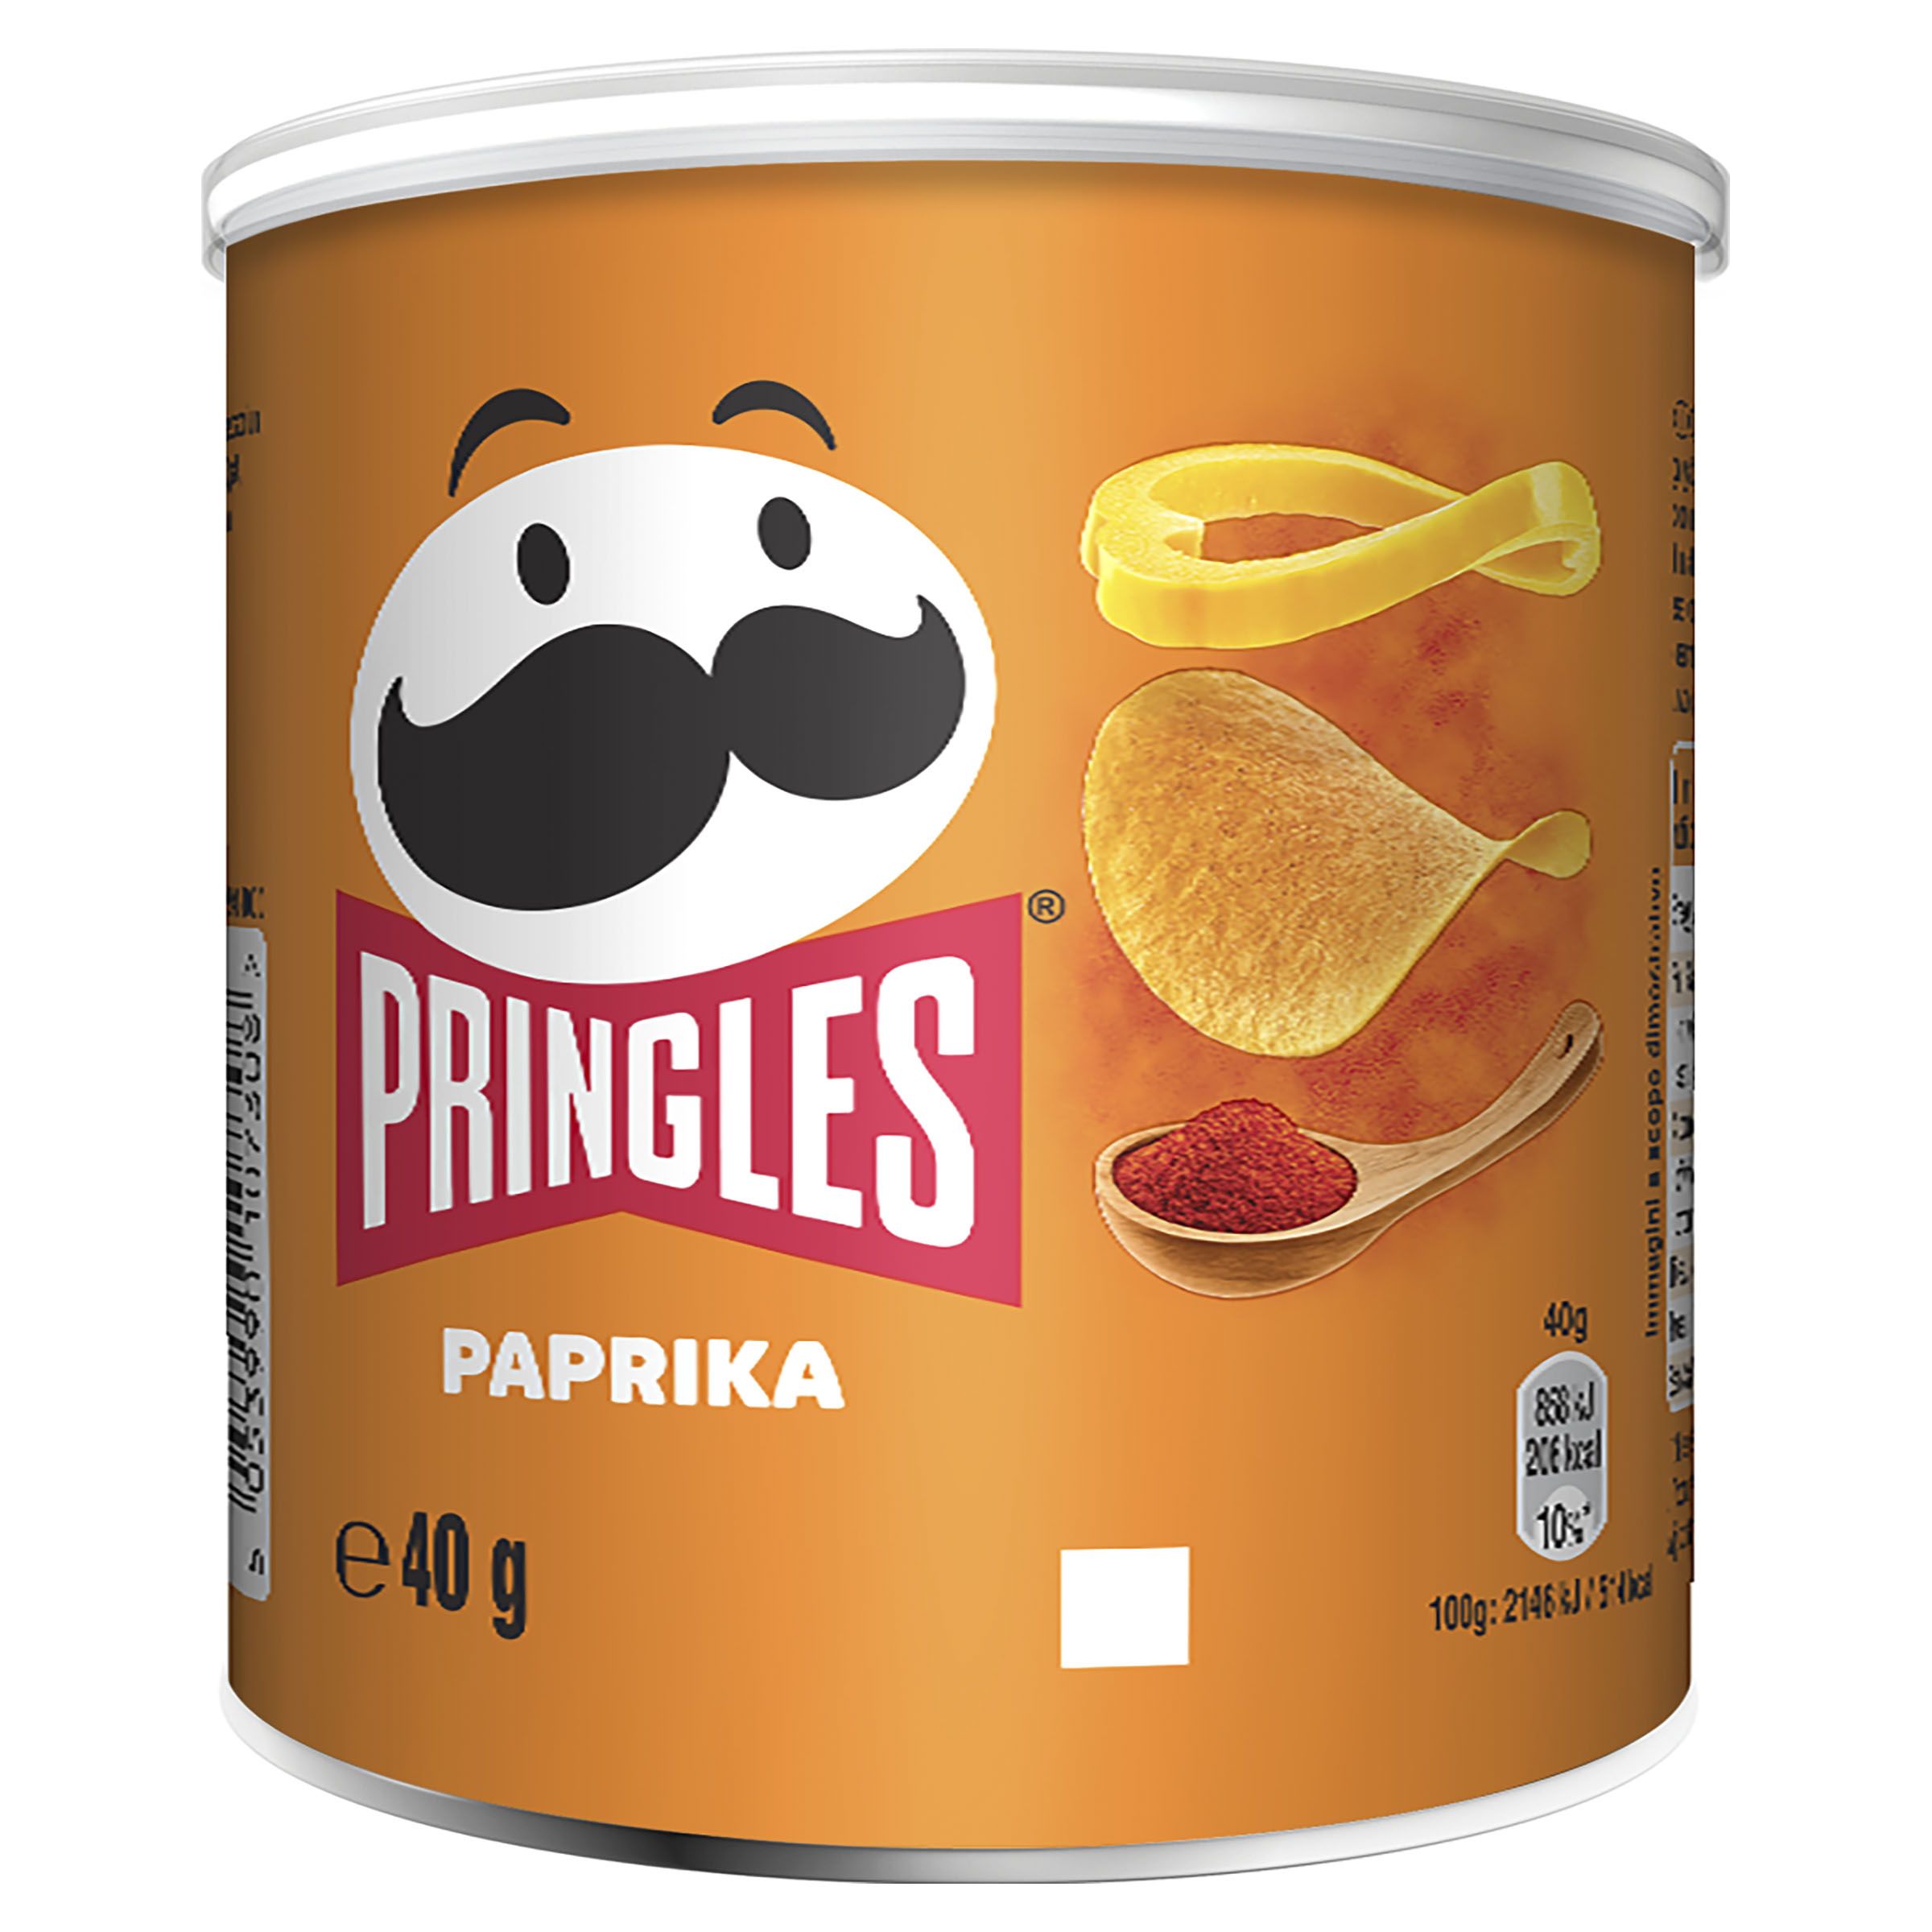 Pringles Paprika | Kellogg's